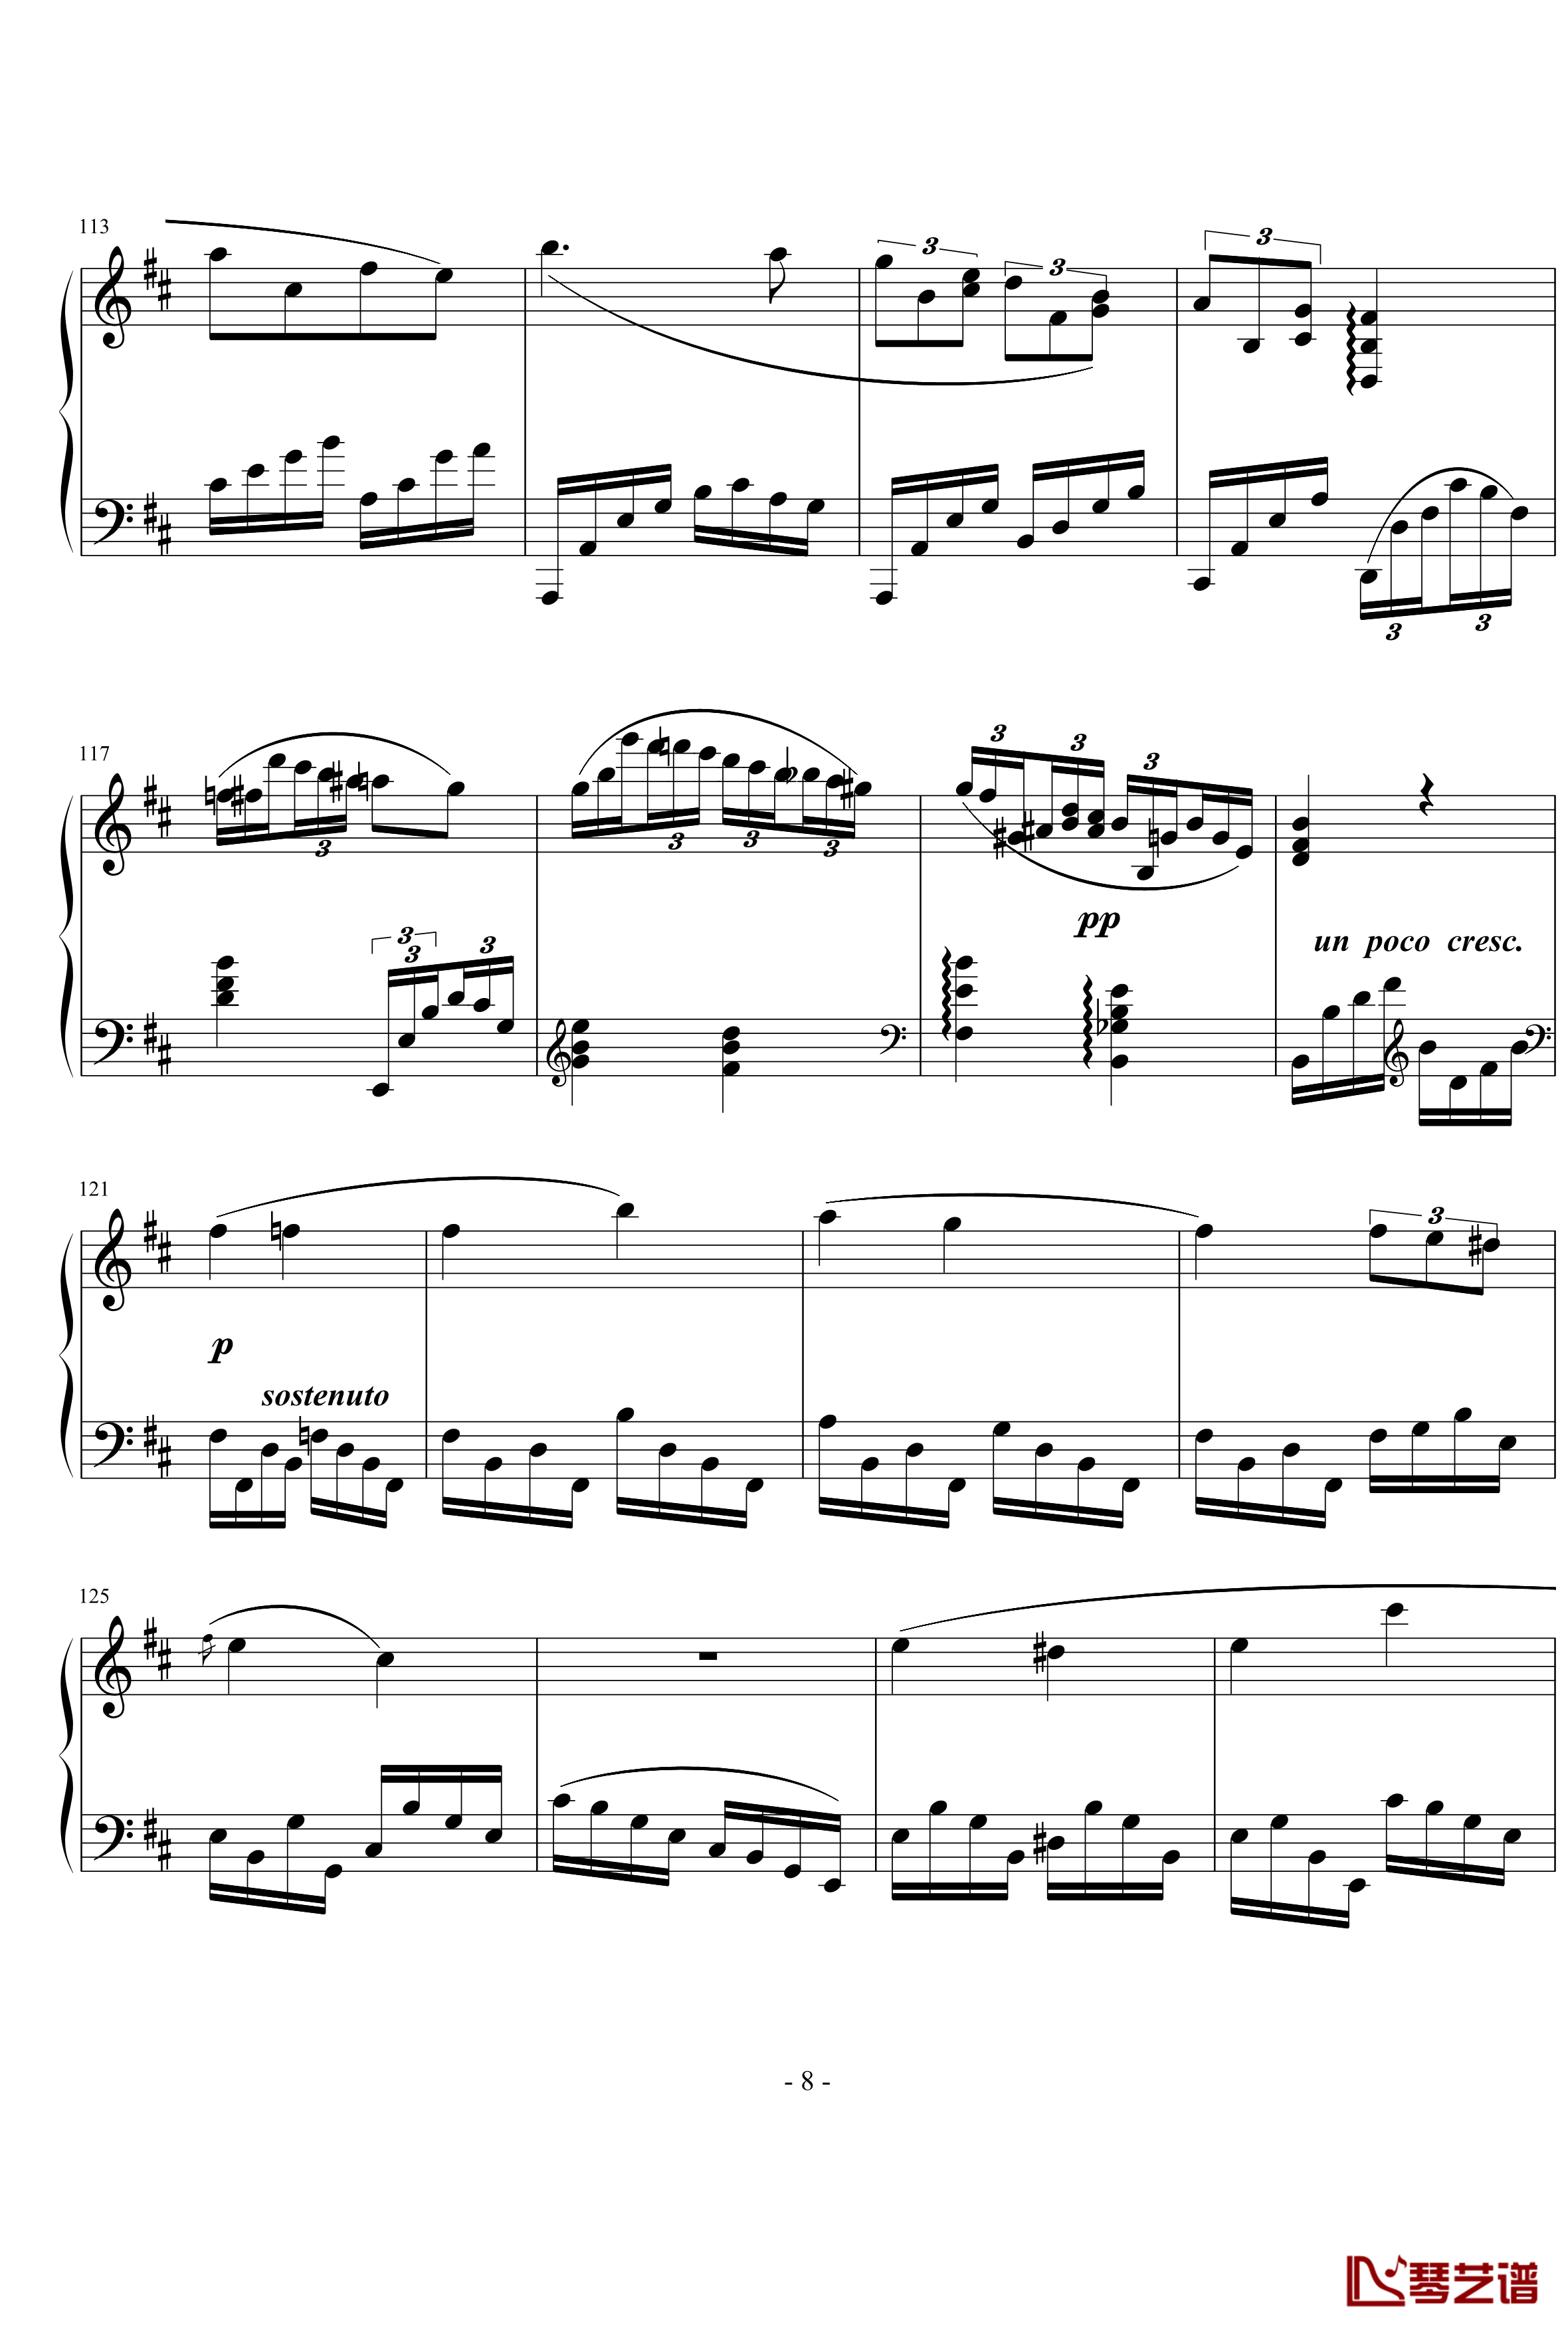 幻想曲钢琴谱-nyride8